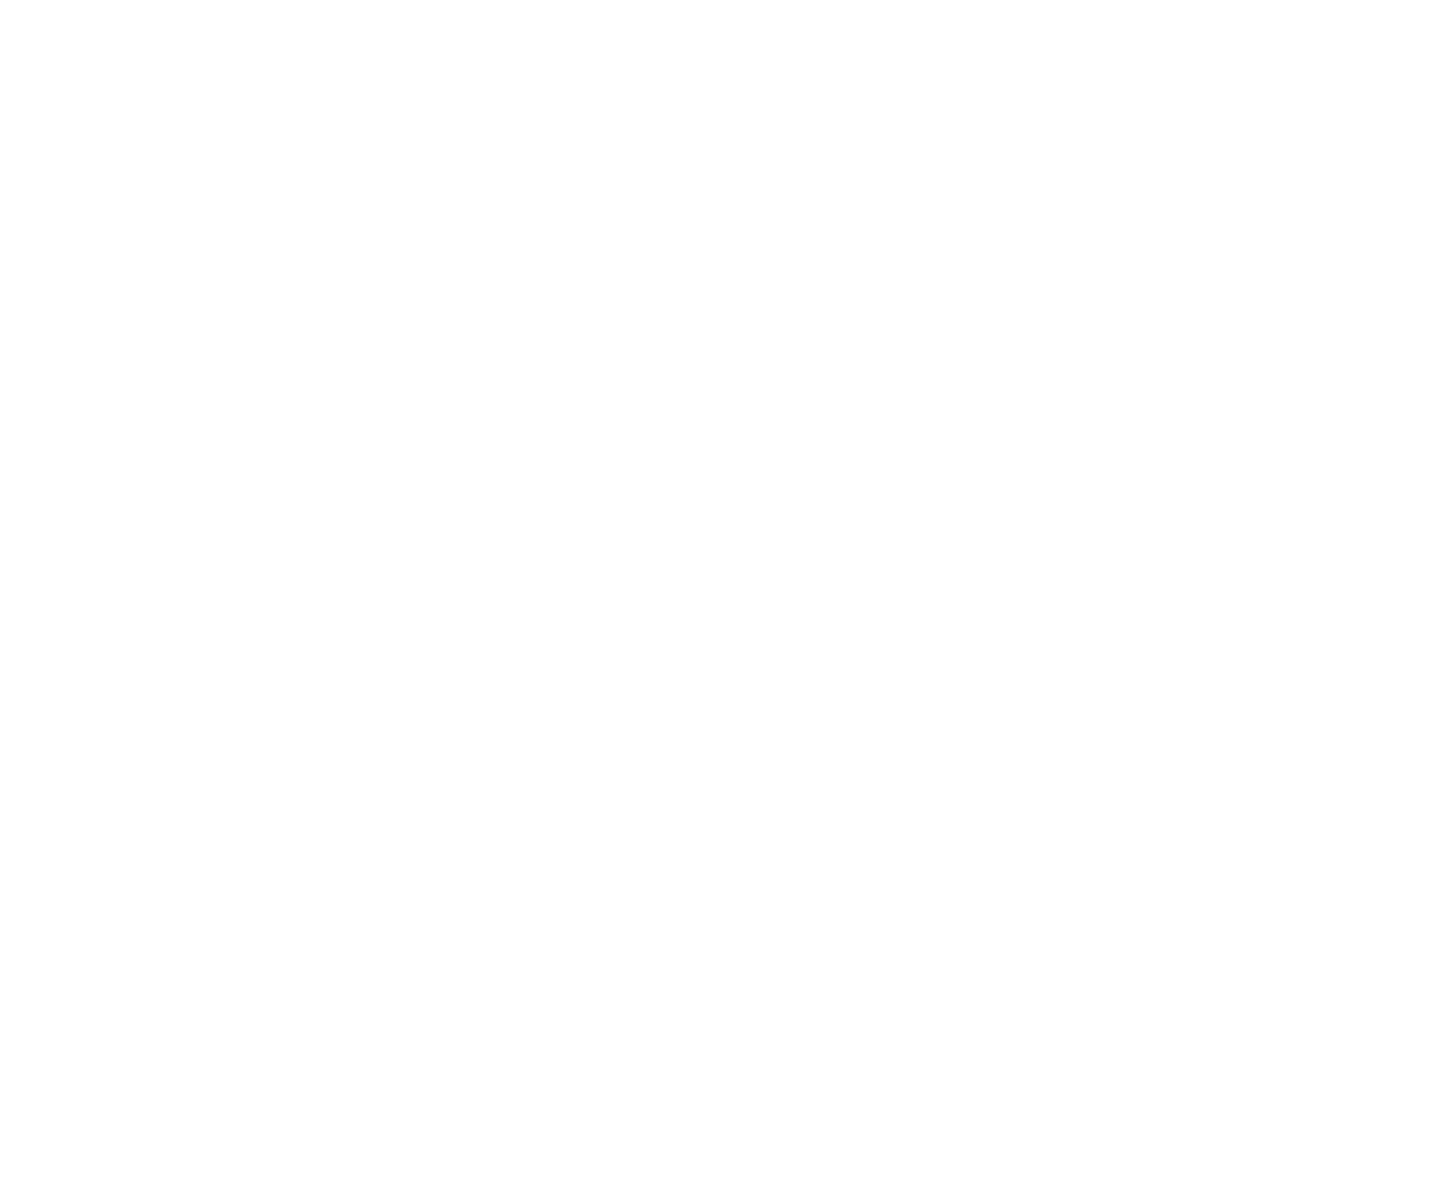 Hyperframe